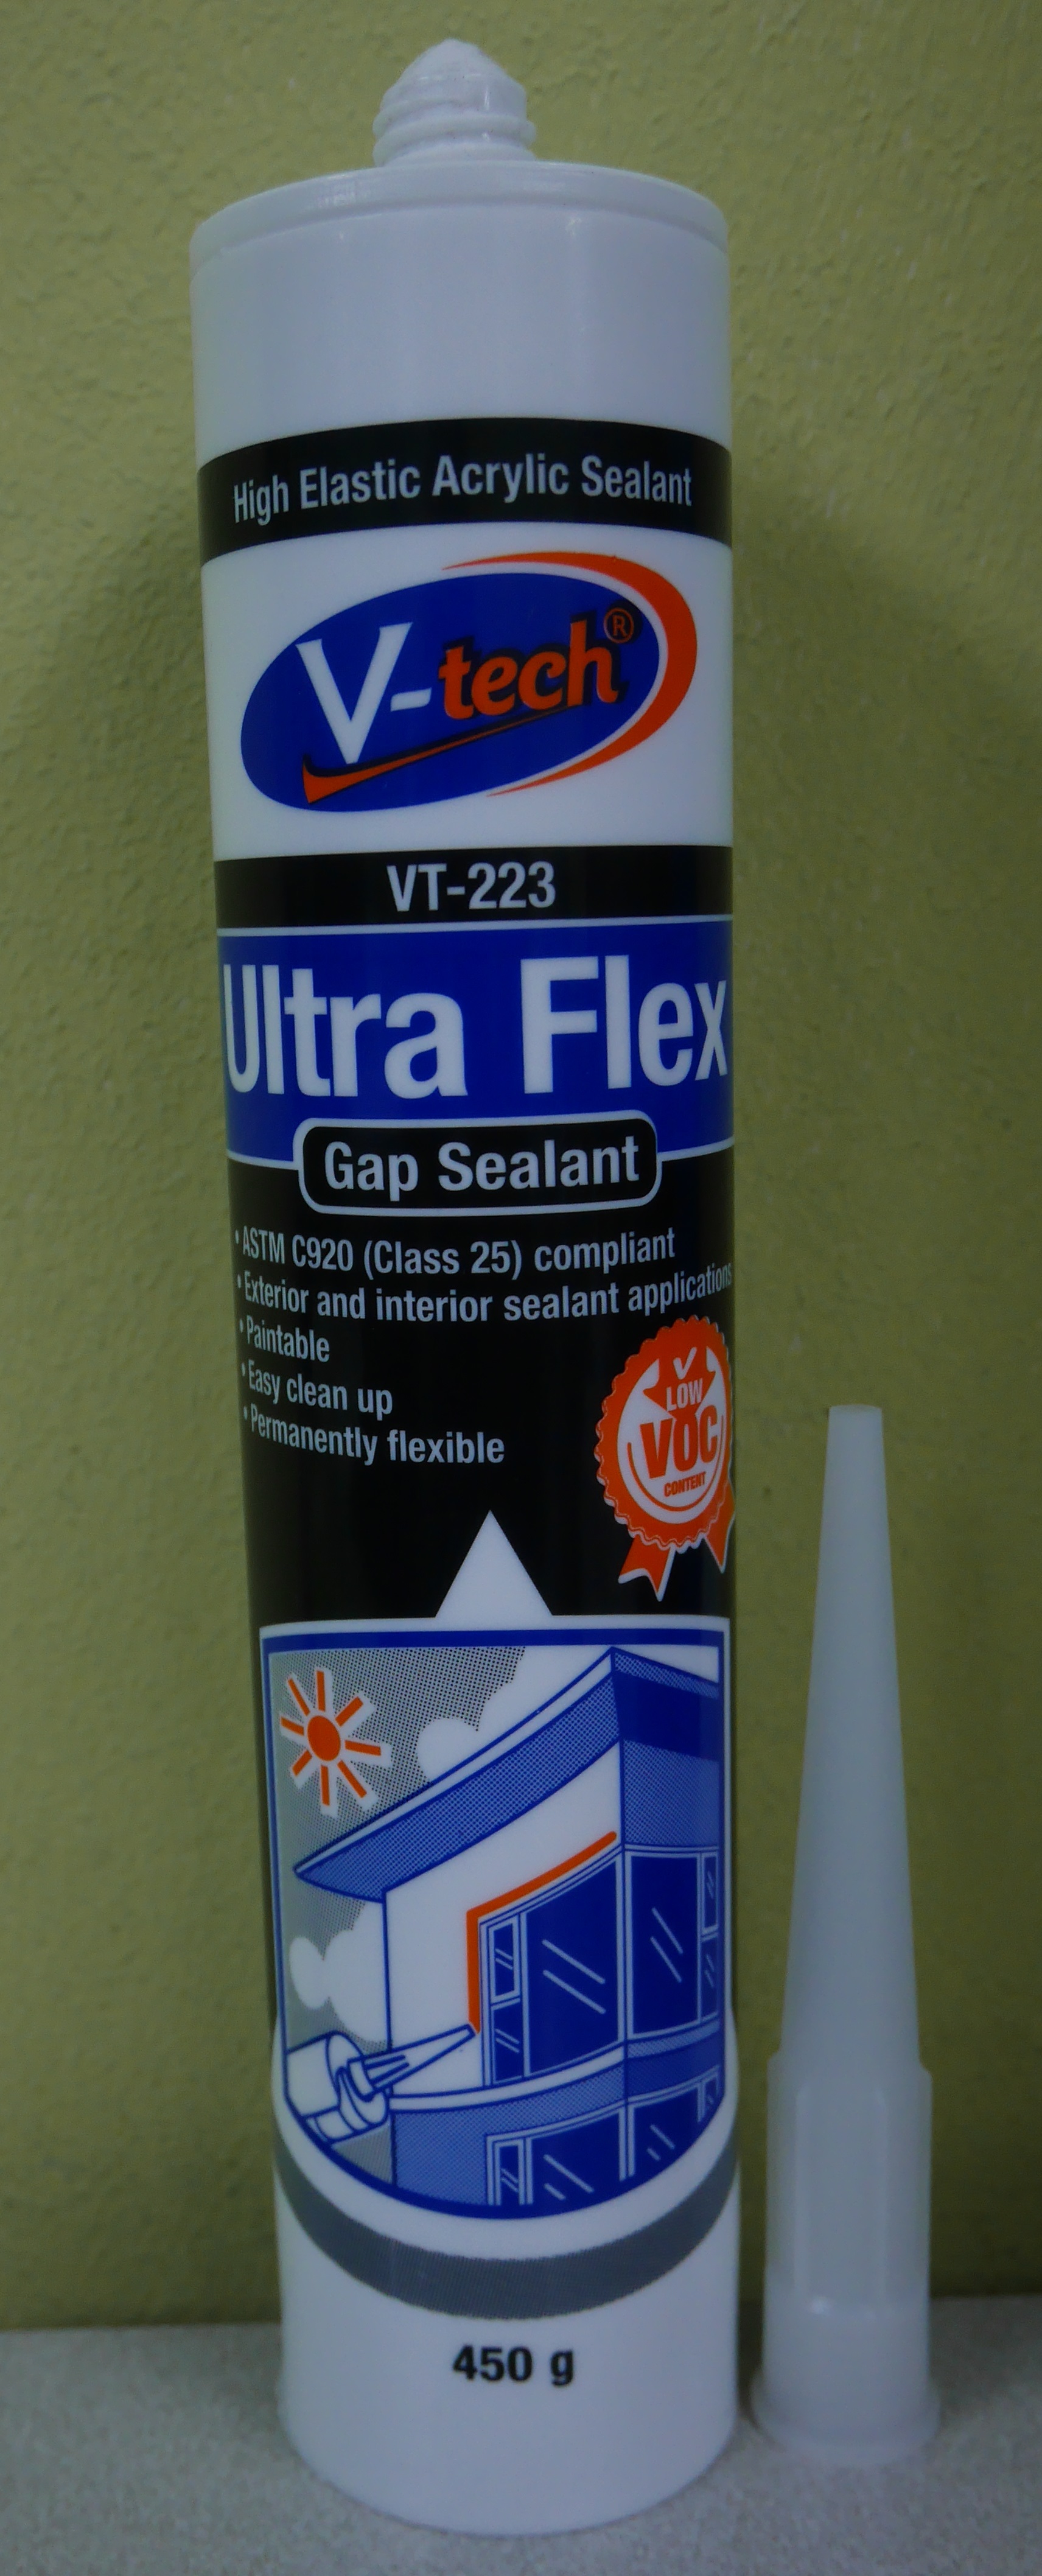 VT-223 Ultra Flex Gap Sealant - Acrylic Sealant